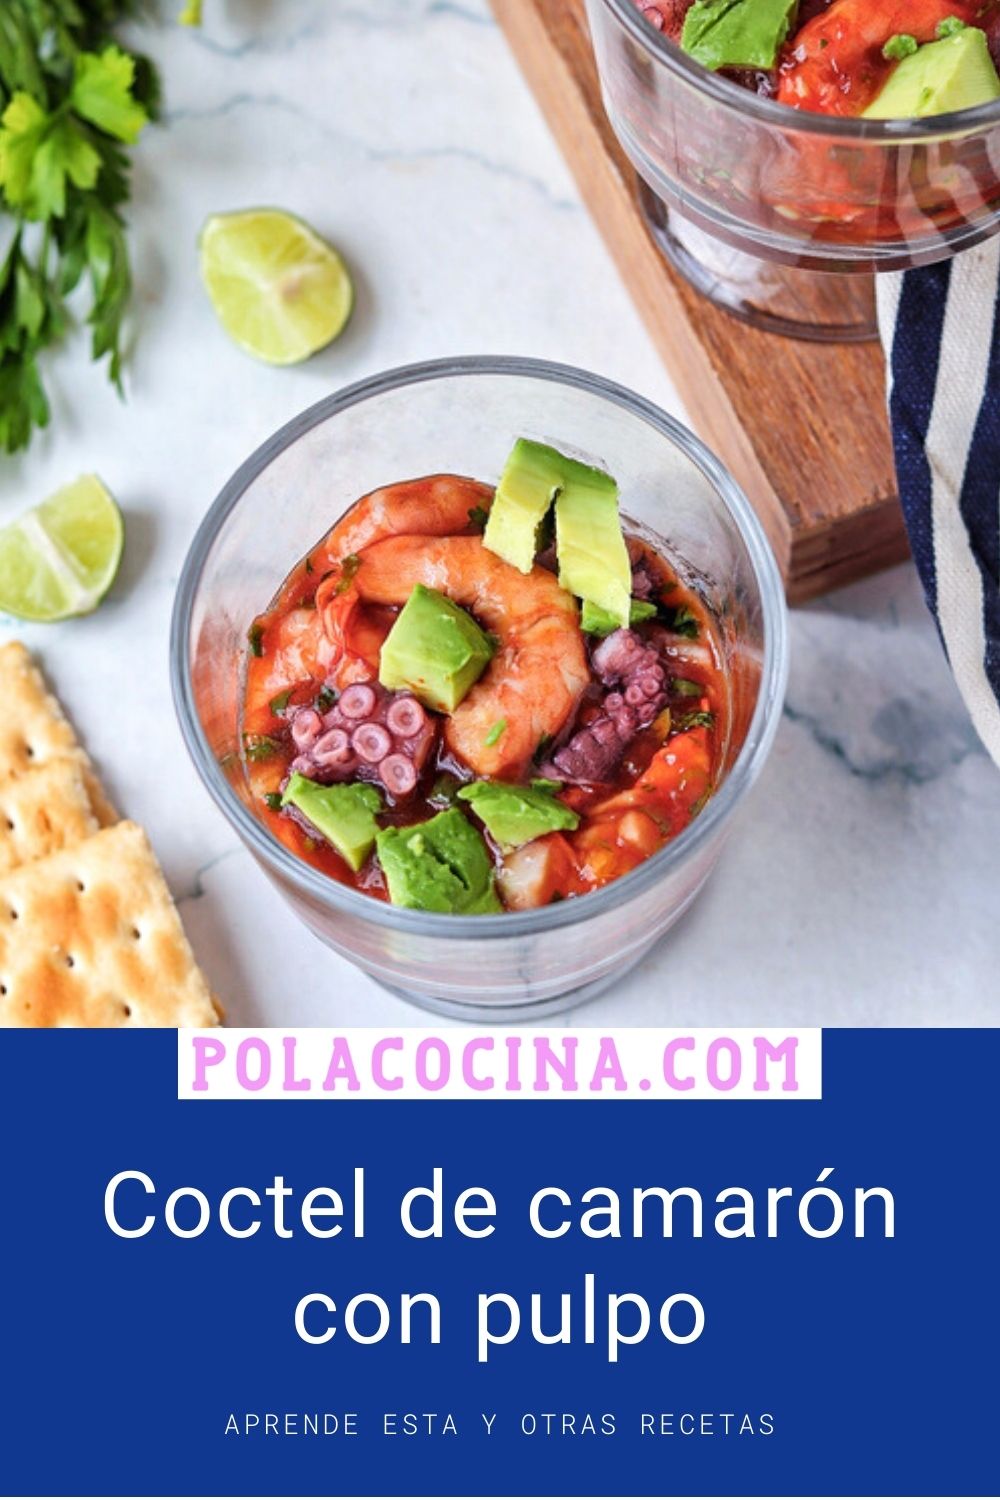 Coctel de camarón con pulpo estilo Veracruz receta